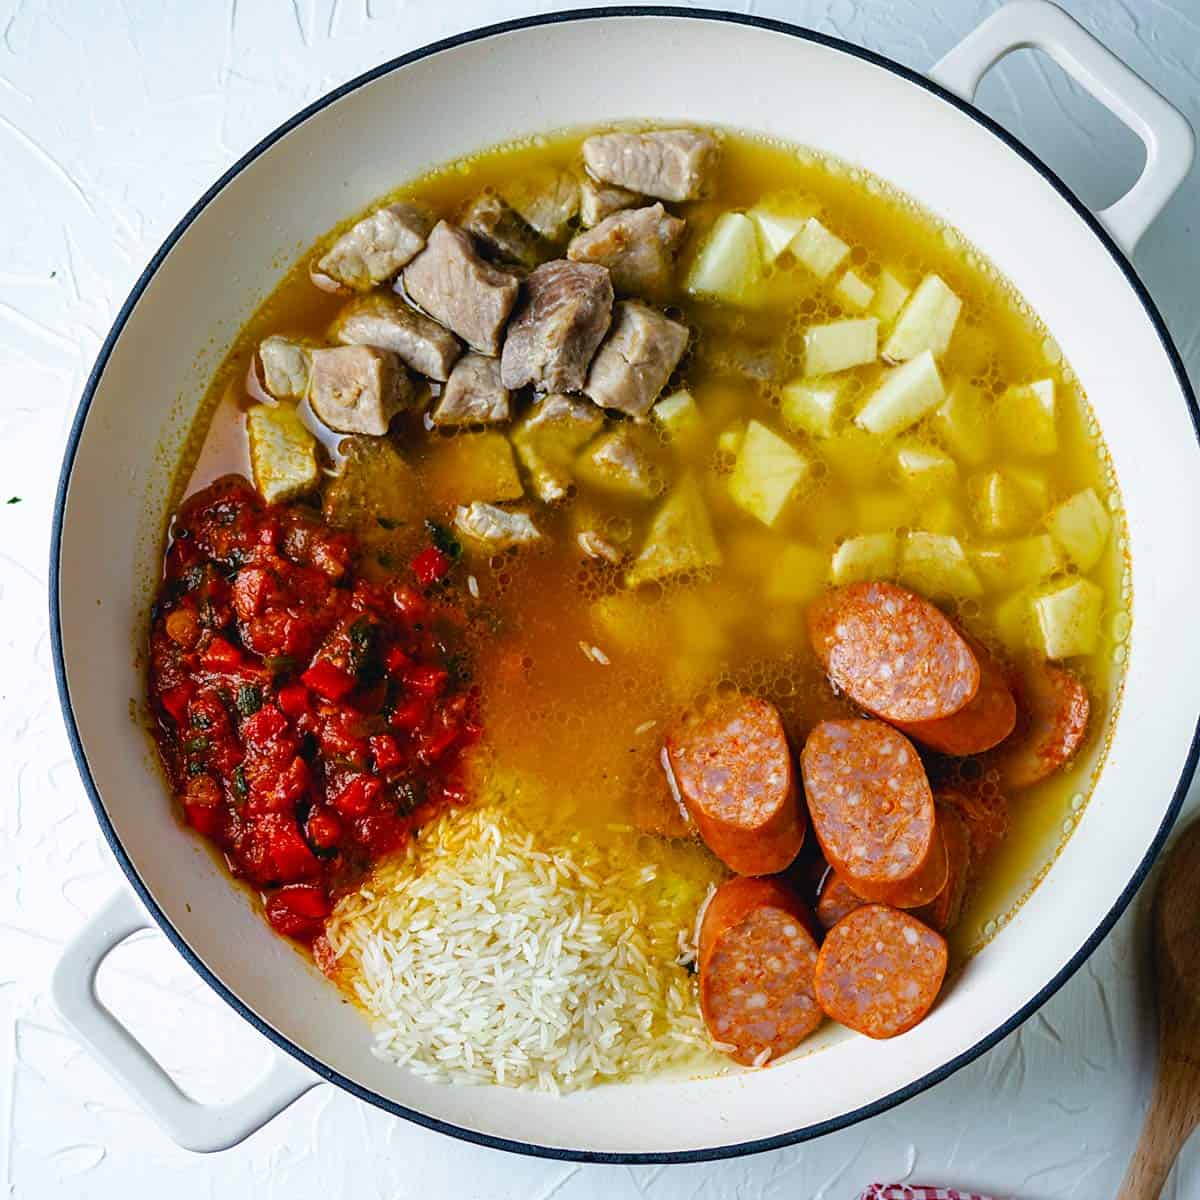 POrk, sausage, potatoes, hogao sauce, rice and broth in a shallow pot. 